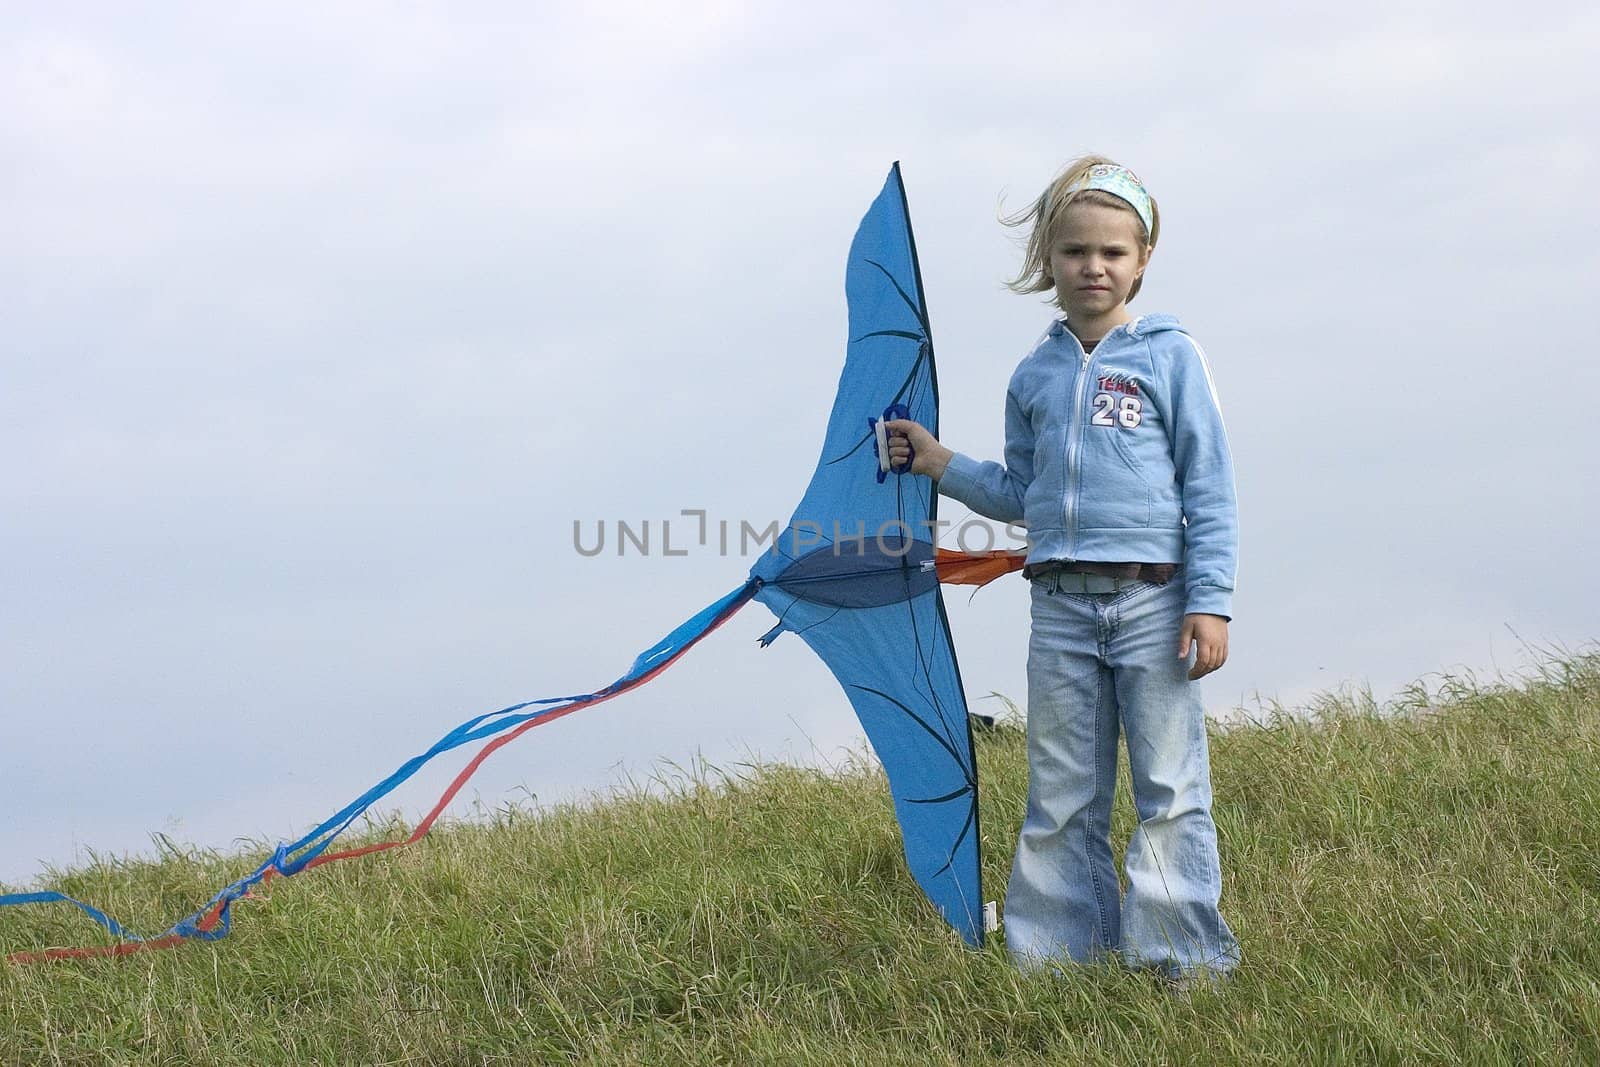 flying a kite by miradrozdowski